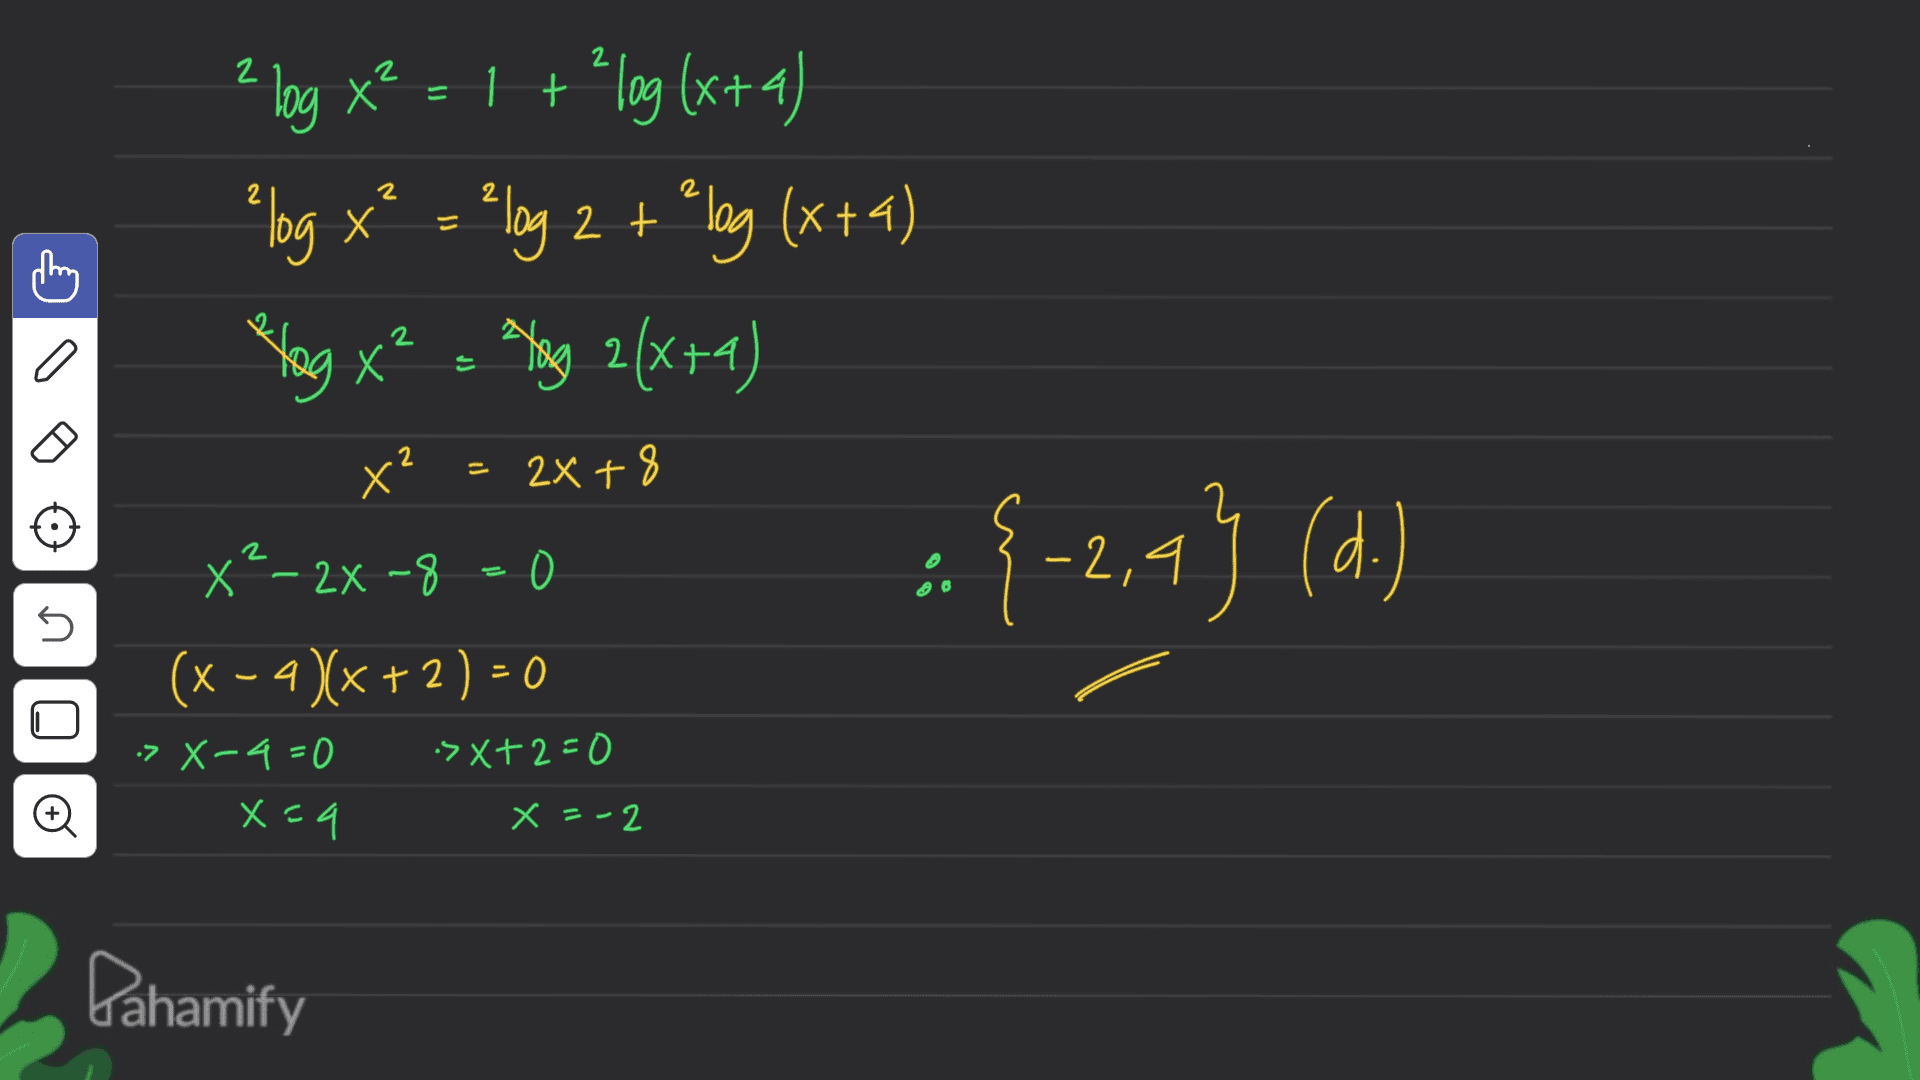 2 X = 2 Х 2 2 log x2 = 1 + 'log (x+4) *log x* = -log 2 + long (x+4) Hag x² = lang 2(x+1) x? x?- 2x -8 (x - 2)(x+2) = 0 Х 2 - 2x + 8 2X + 8 :{-2,4} (d.) ) s >X-4=0 -> X+2=0 Đ x=9 x = -2 Pahamify 